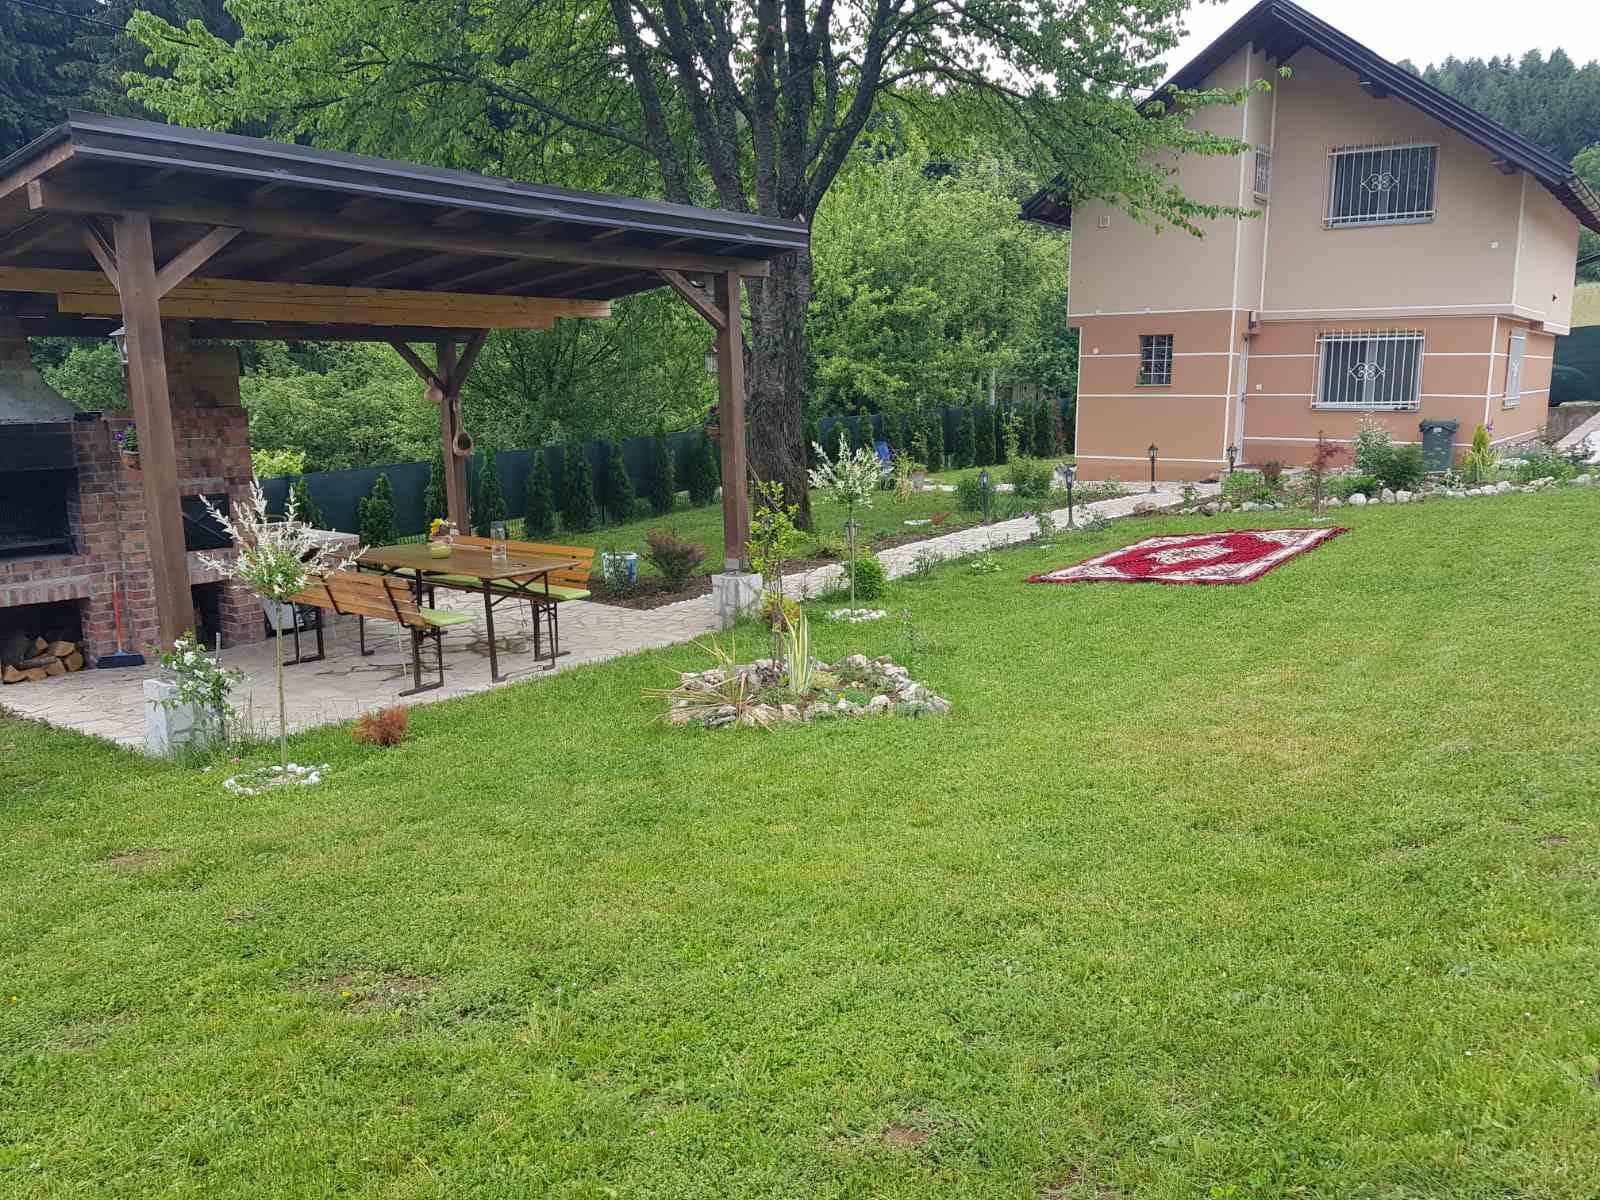 Agencija za nekretnine Platinum star iz svoje ponude izdvaja prodaju kuće na lokaciji opštine Hadžići.